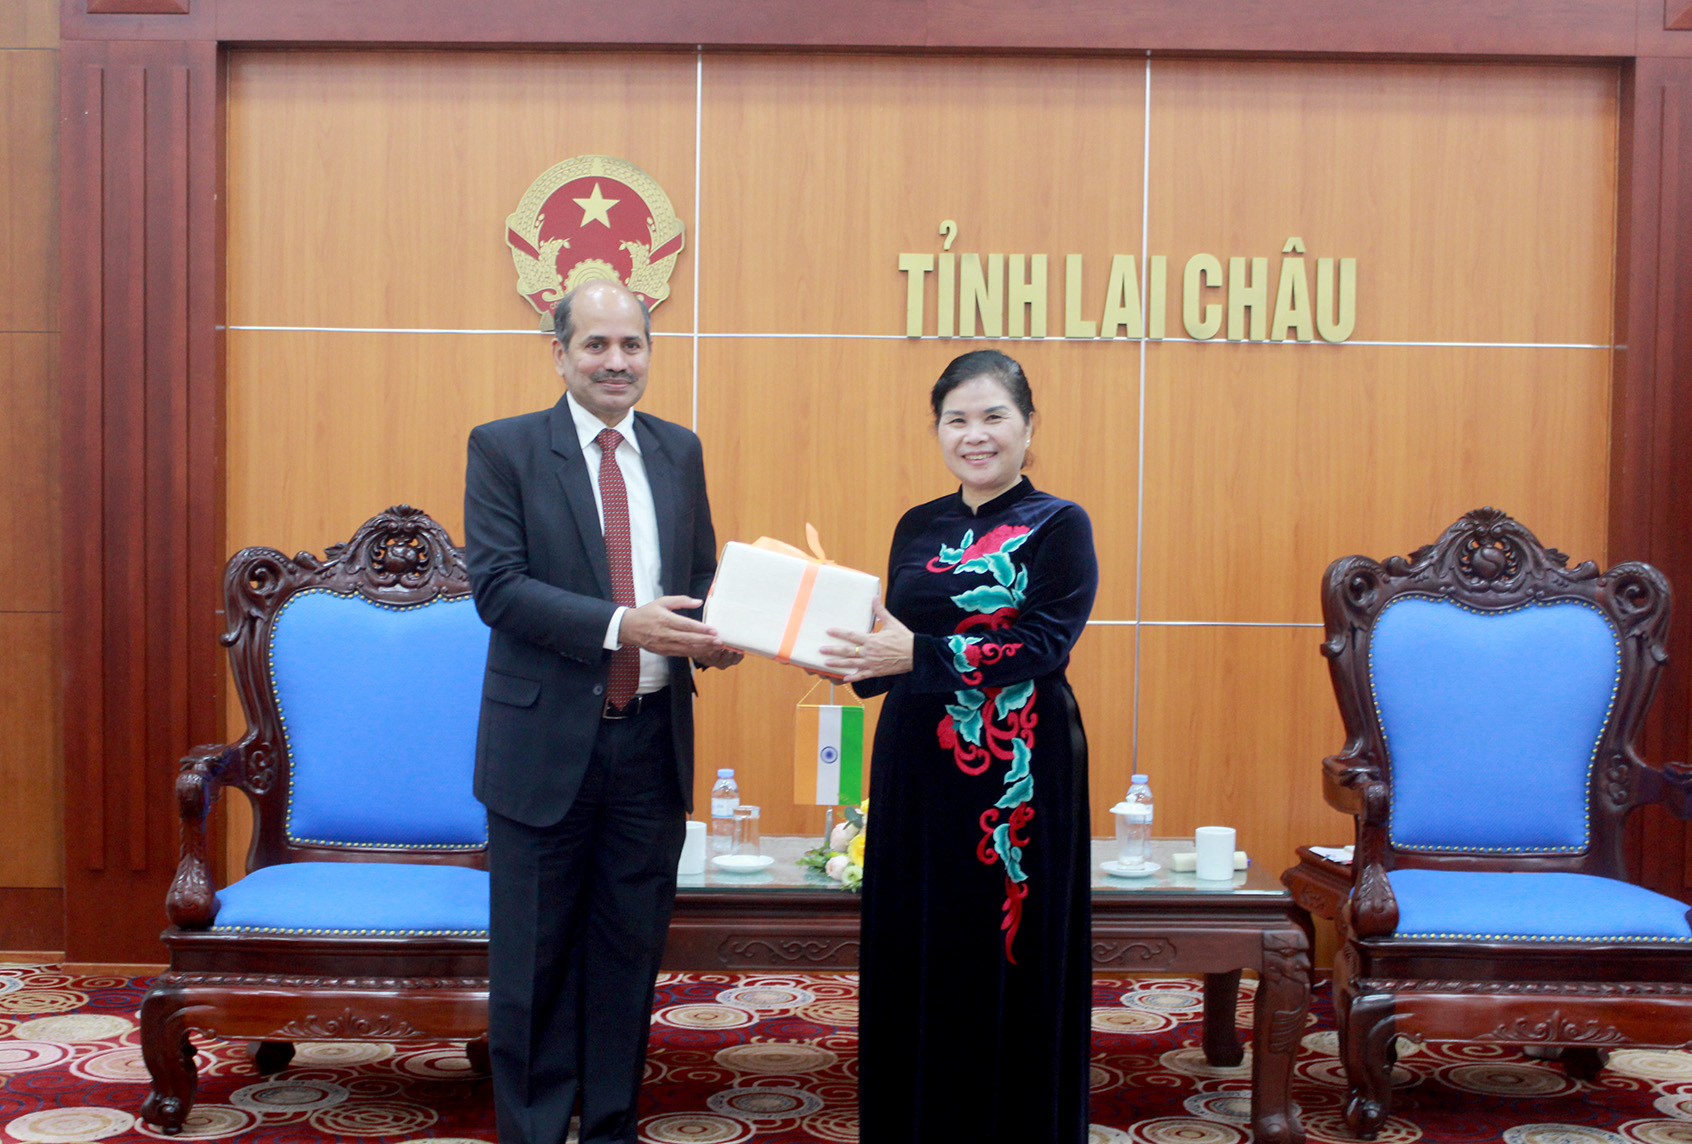 Đại sứ San-đíp-A-ry-a tặng món quà lưu niệm cho Bí thư Tỉnh ủy Lai Châu Giàng Páo Mỷ.